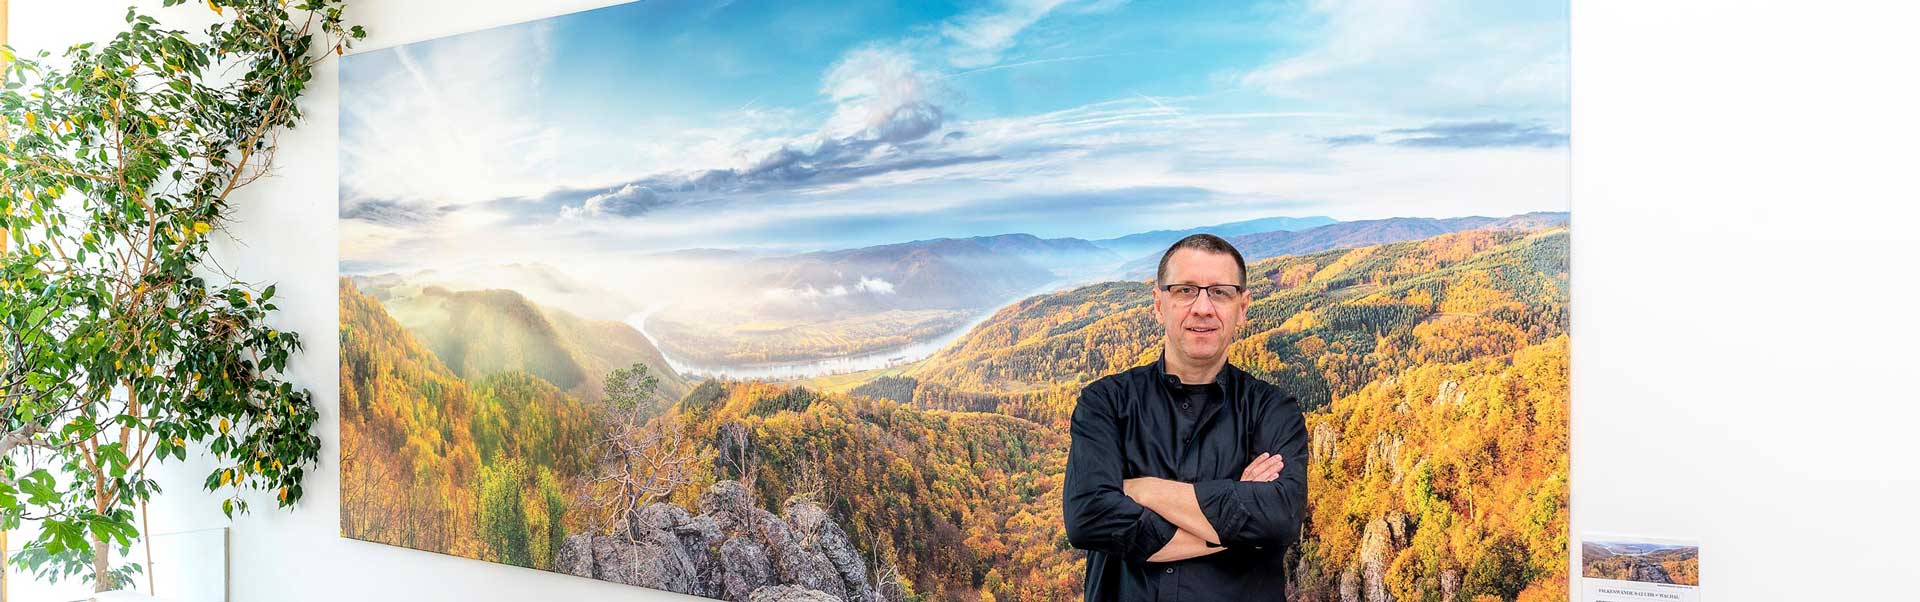 Fotograf Reinhard Podolsky vor seinem 430x170 cm Wachaupanorama